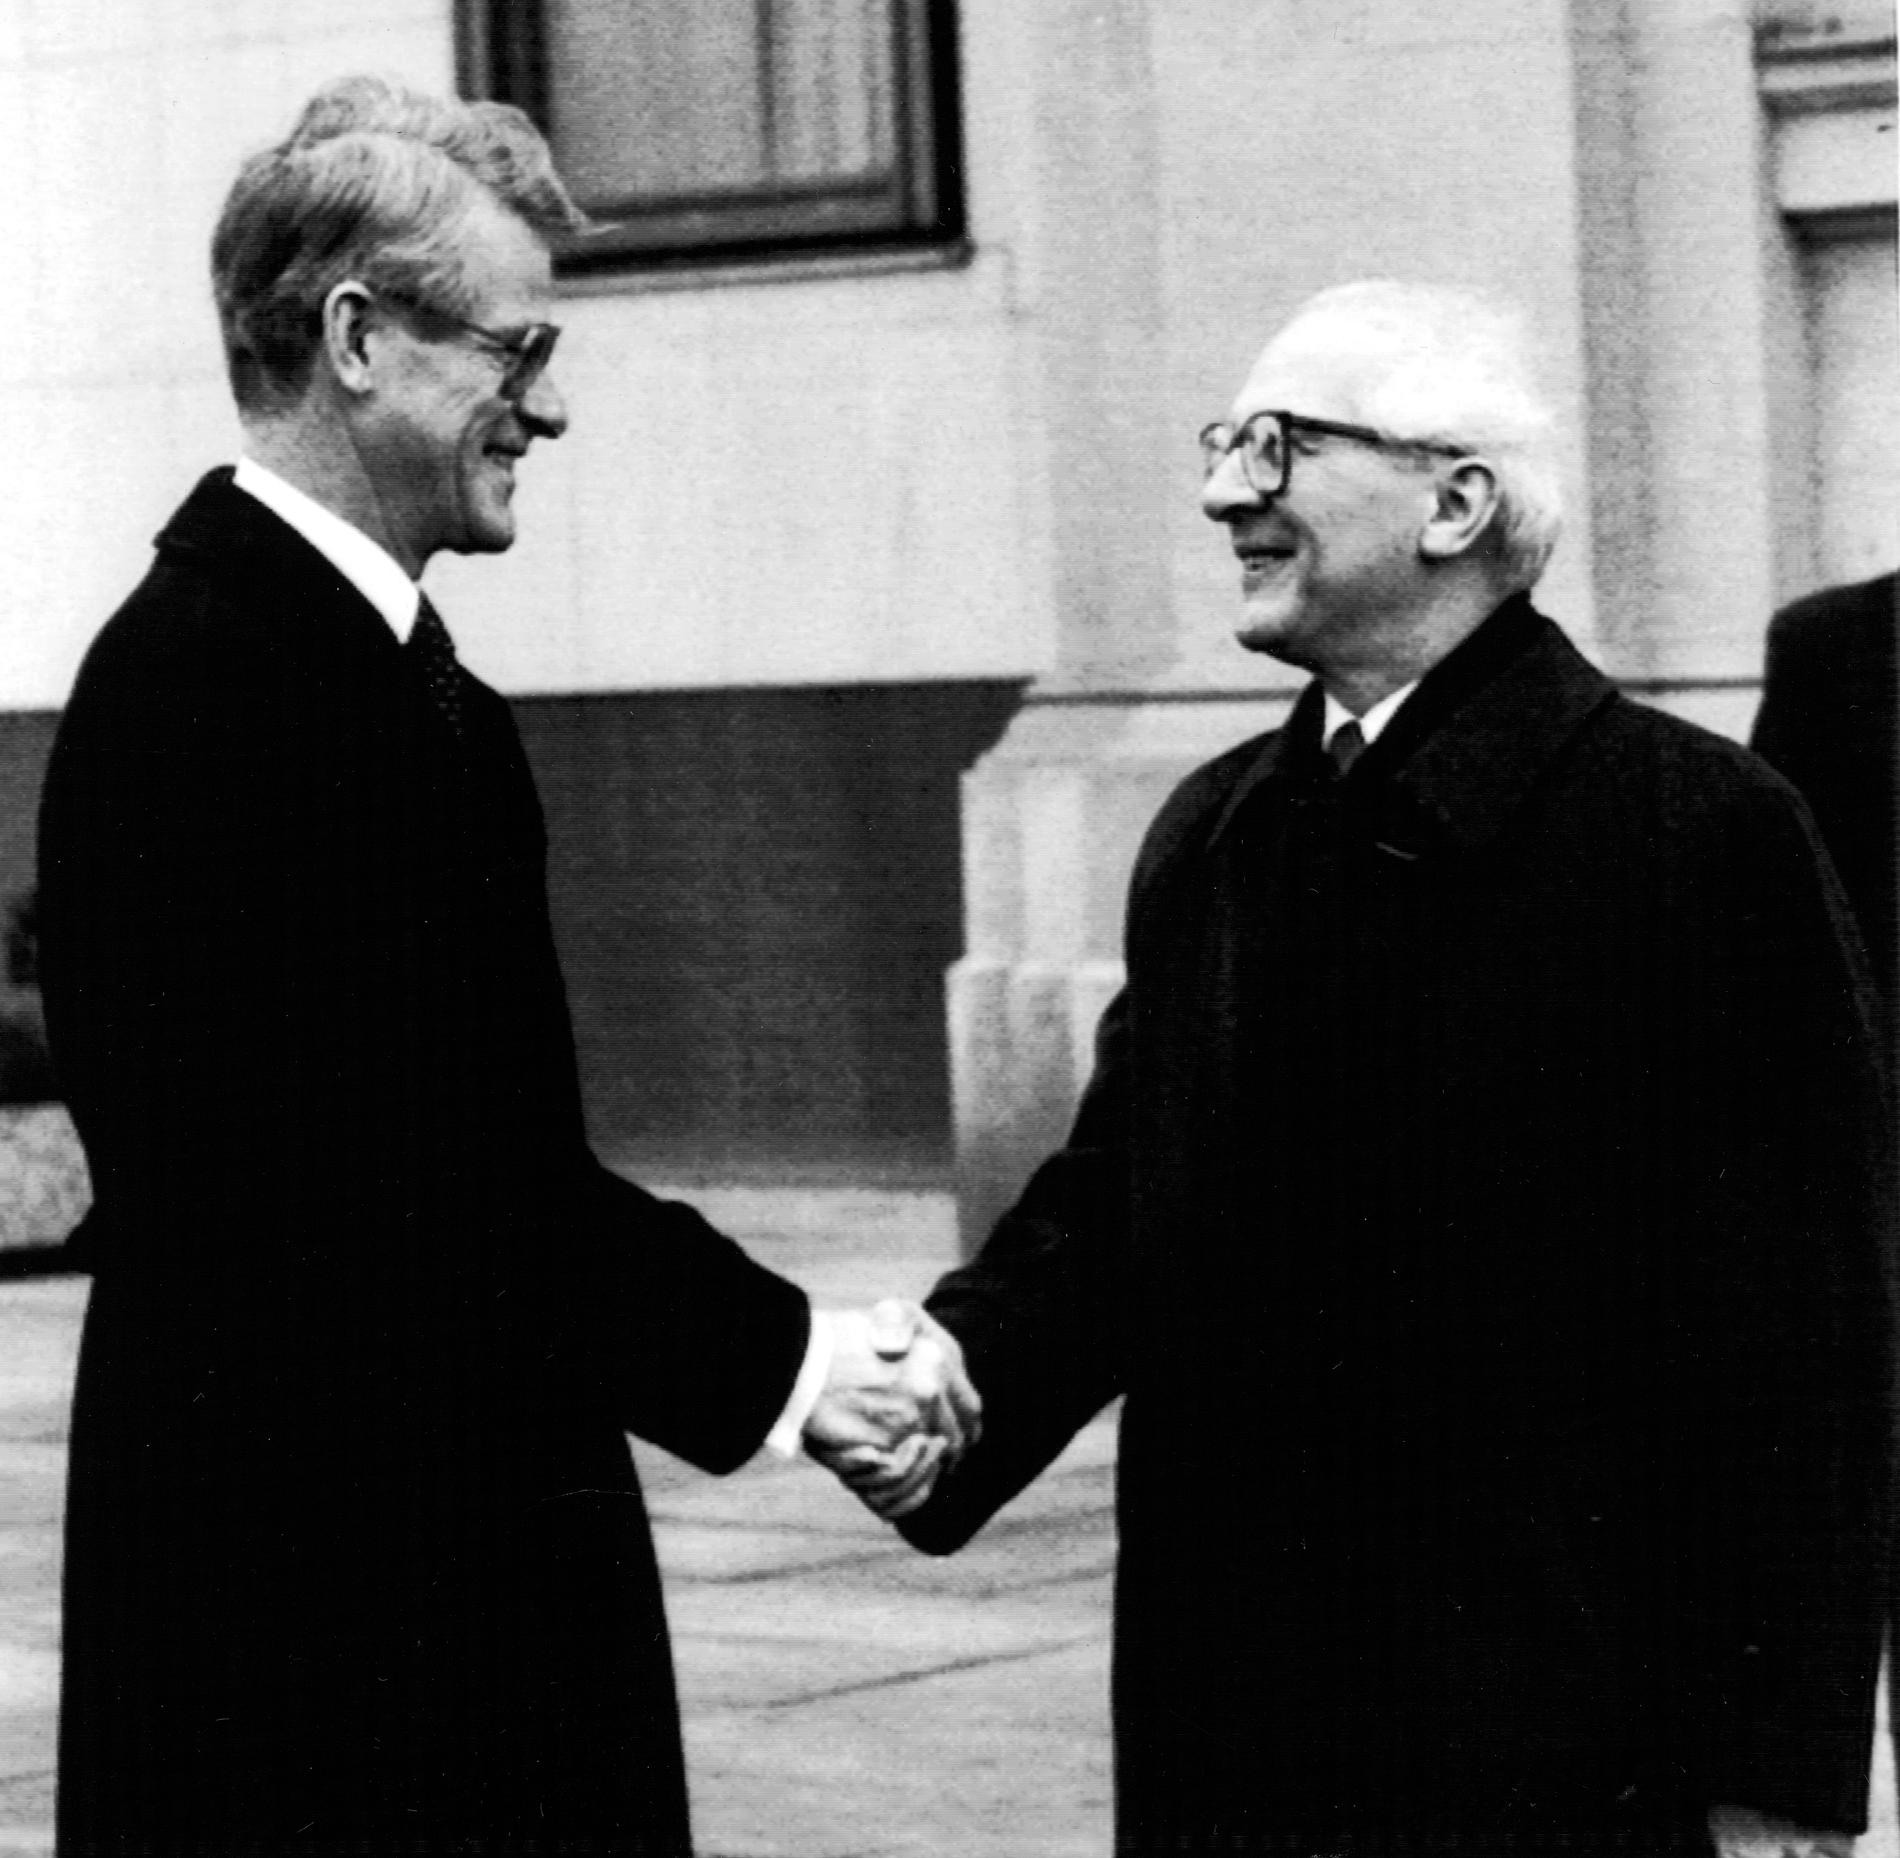 Sveriges dåvarande statsminister Ingvar Carlsson (S) skakar hand med DDR-ledaren Erich Honecker under besöket 1989.